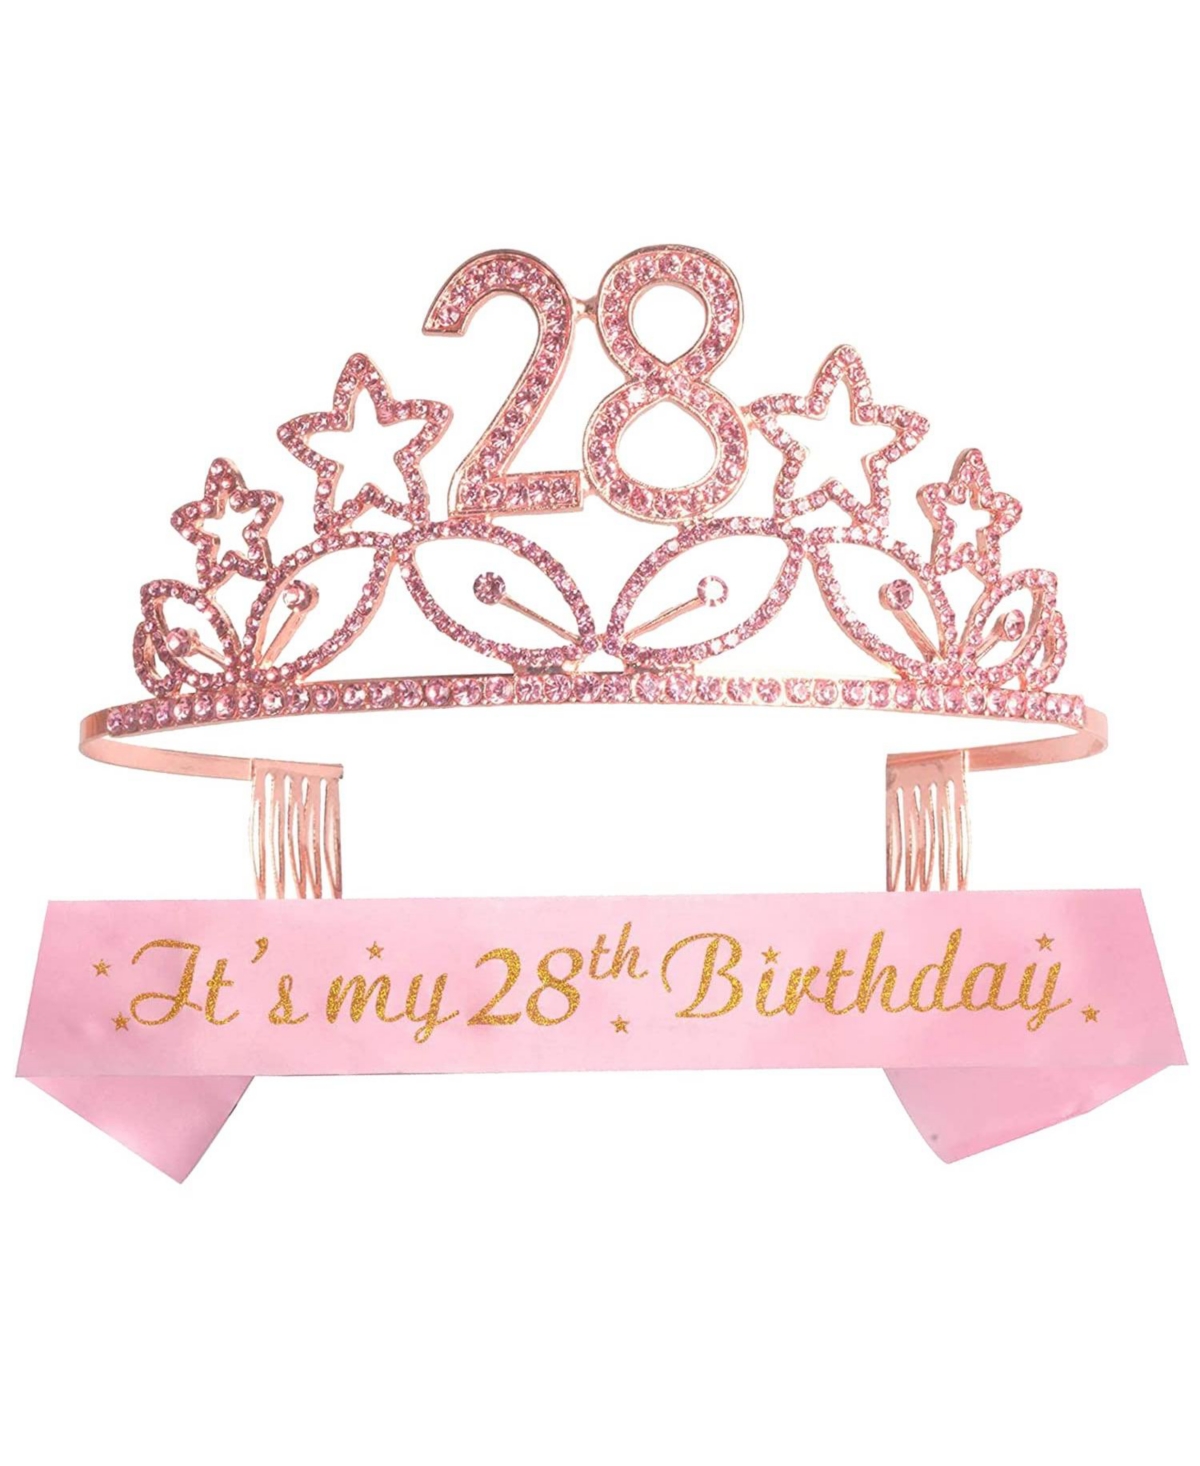 28th Birthday Sash and Tiara for Women - Fabulous Set: Glitter Sash + Stars Rhinestone Pink Premium Metal Tiara for Women, 28th Birthday Gi